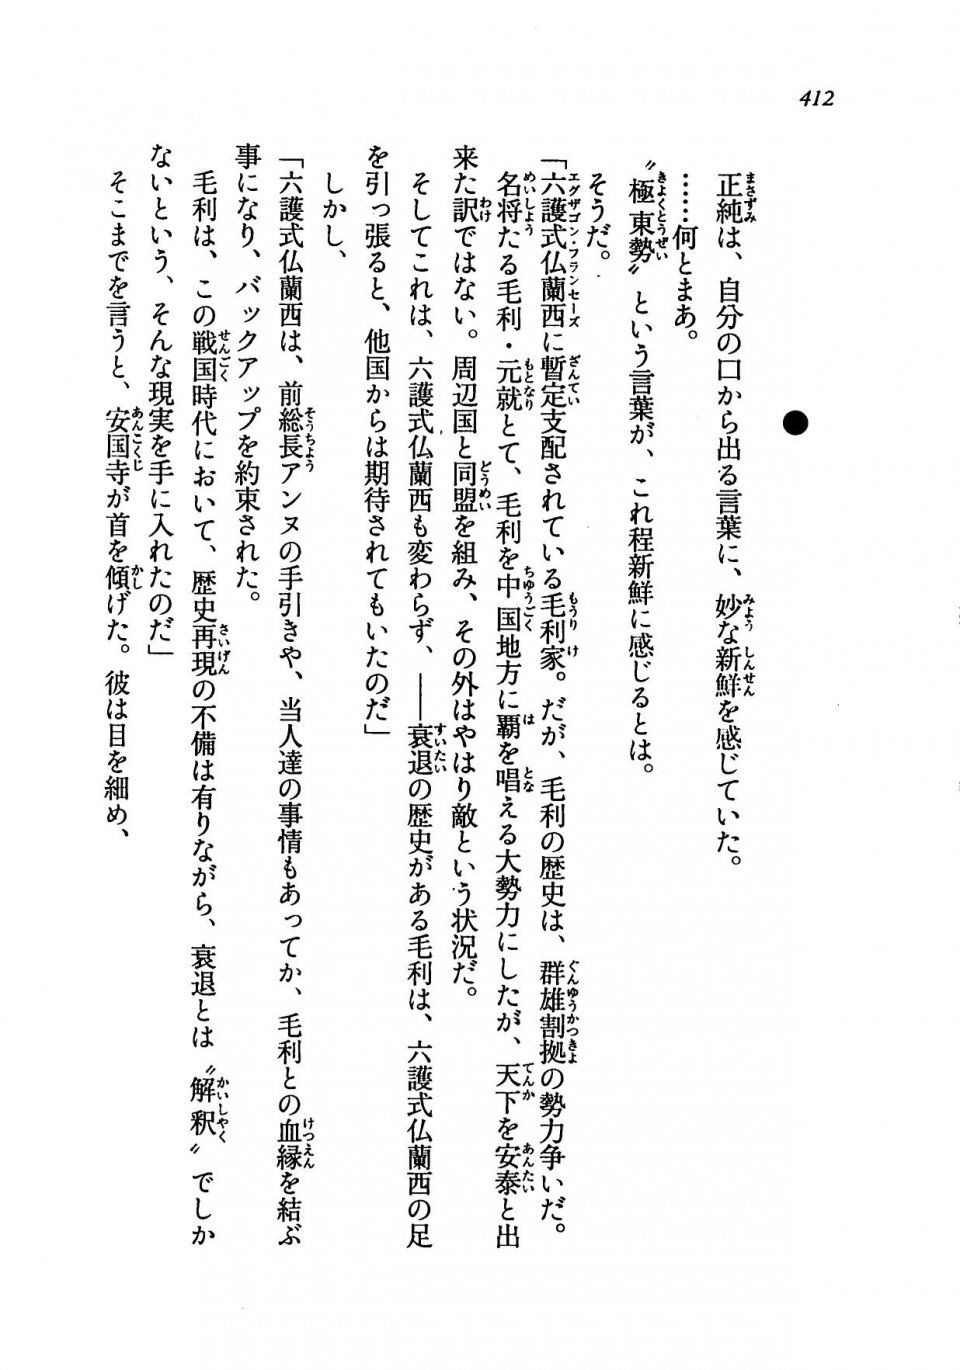 Kyoukai Senjou no Horizon LN Vol 19(8A) - Photo #412